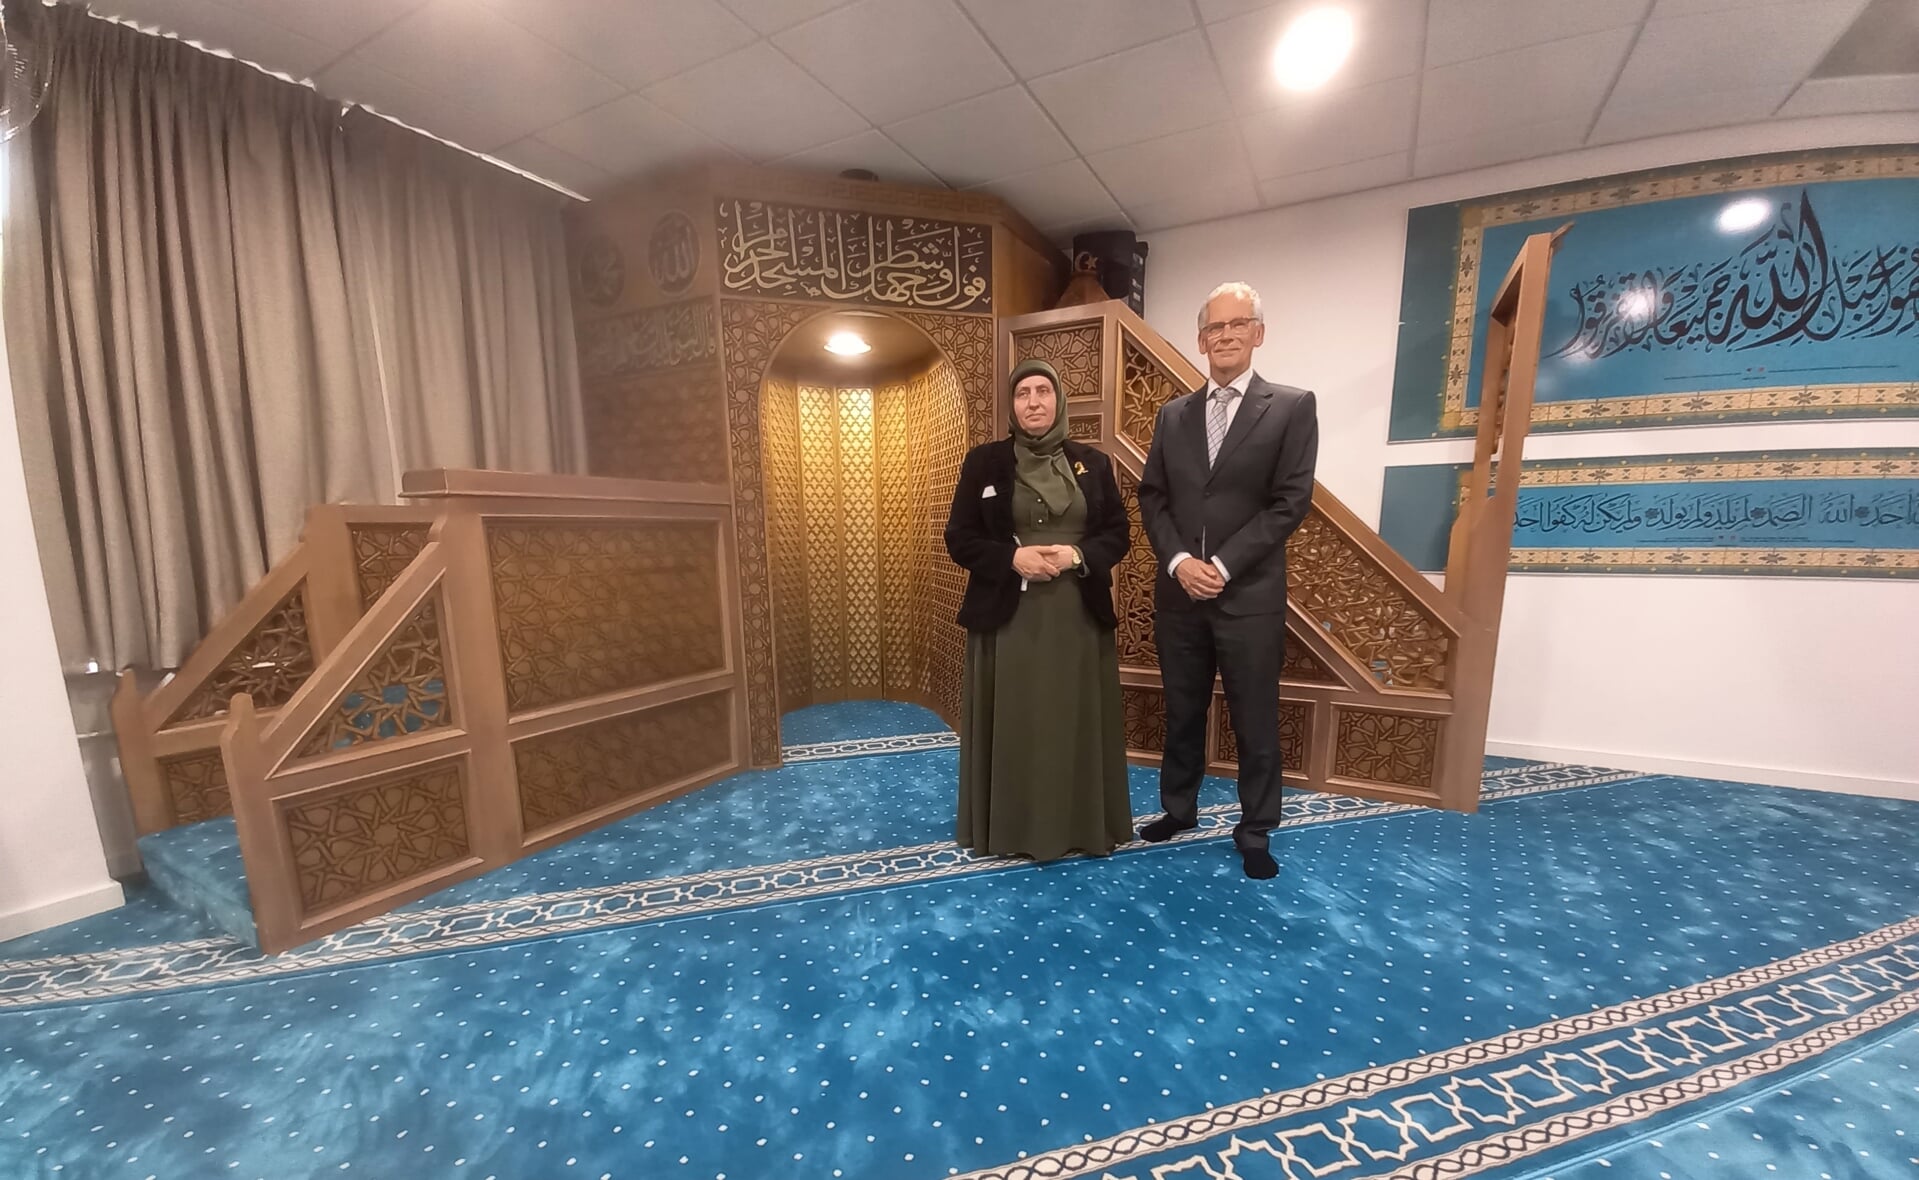 Fatma Tufekçi en Jan Kees Metz in de gebedsruimte, die overeenkomsten vertoont met een kleine moskee.